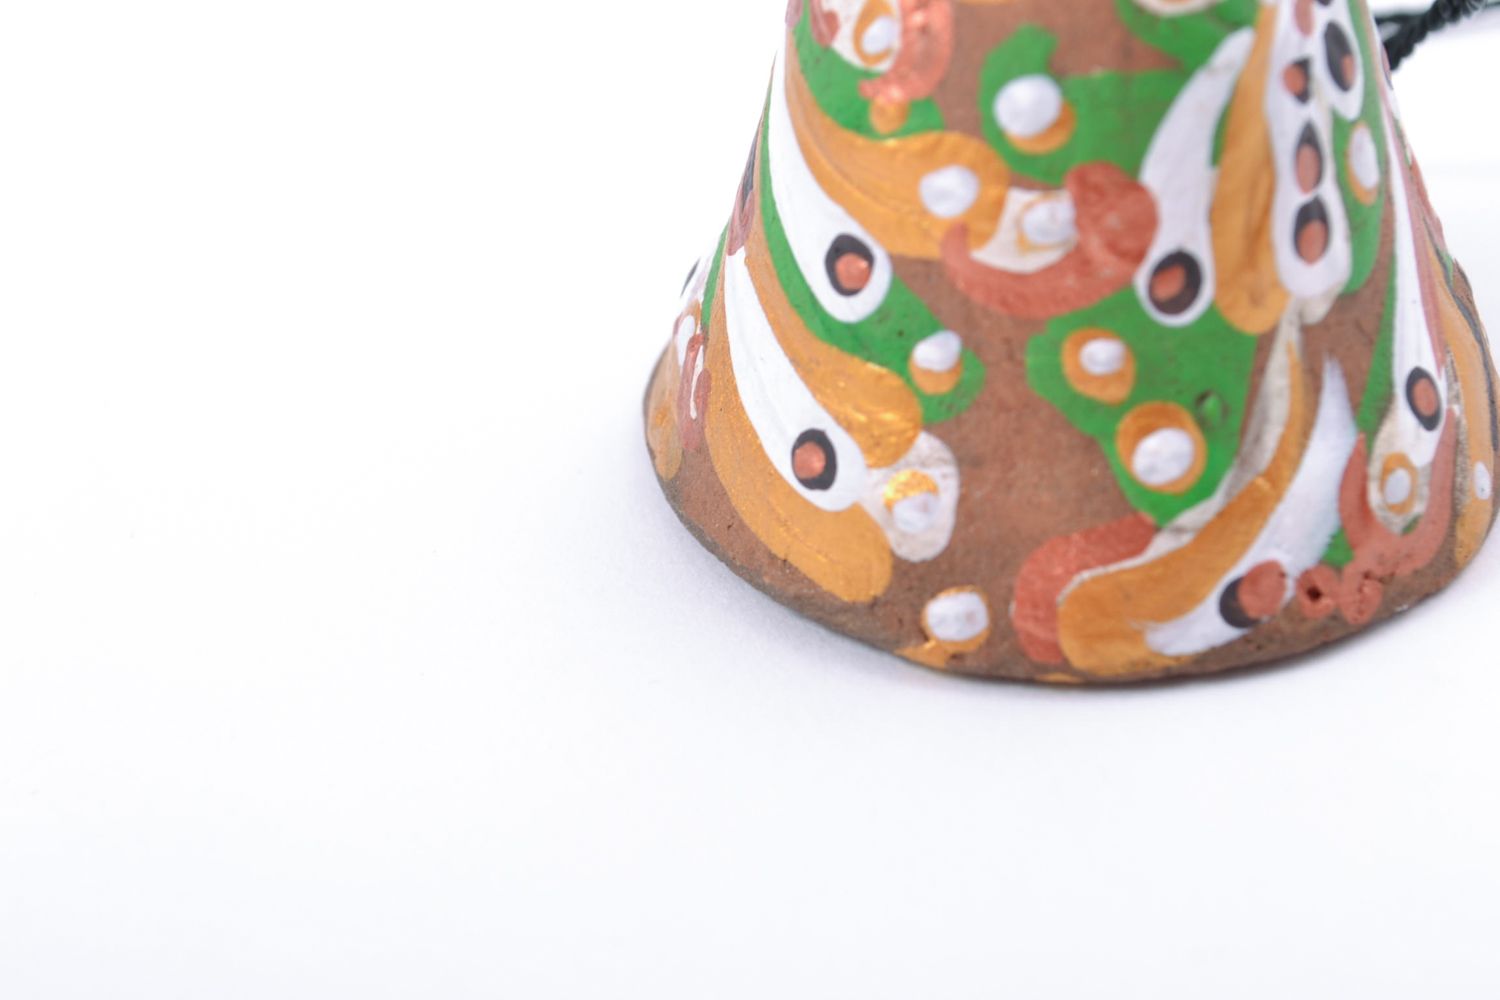 Petite cloche terre cuite multicolore peinte de couleurs acryliques faite main photo 4